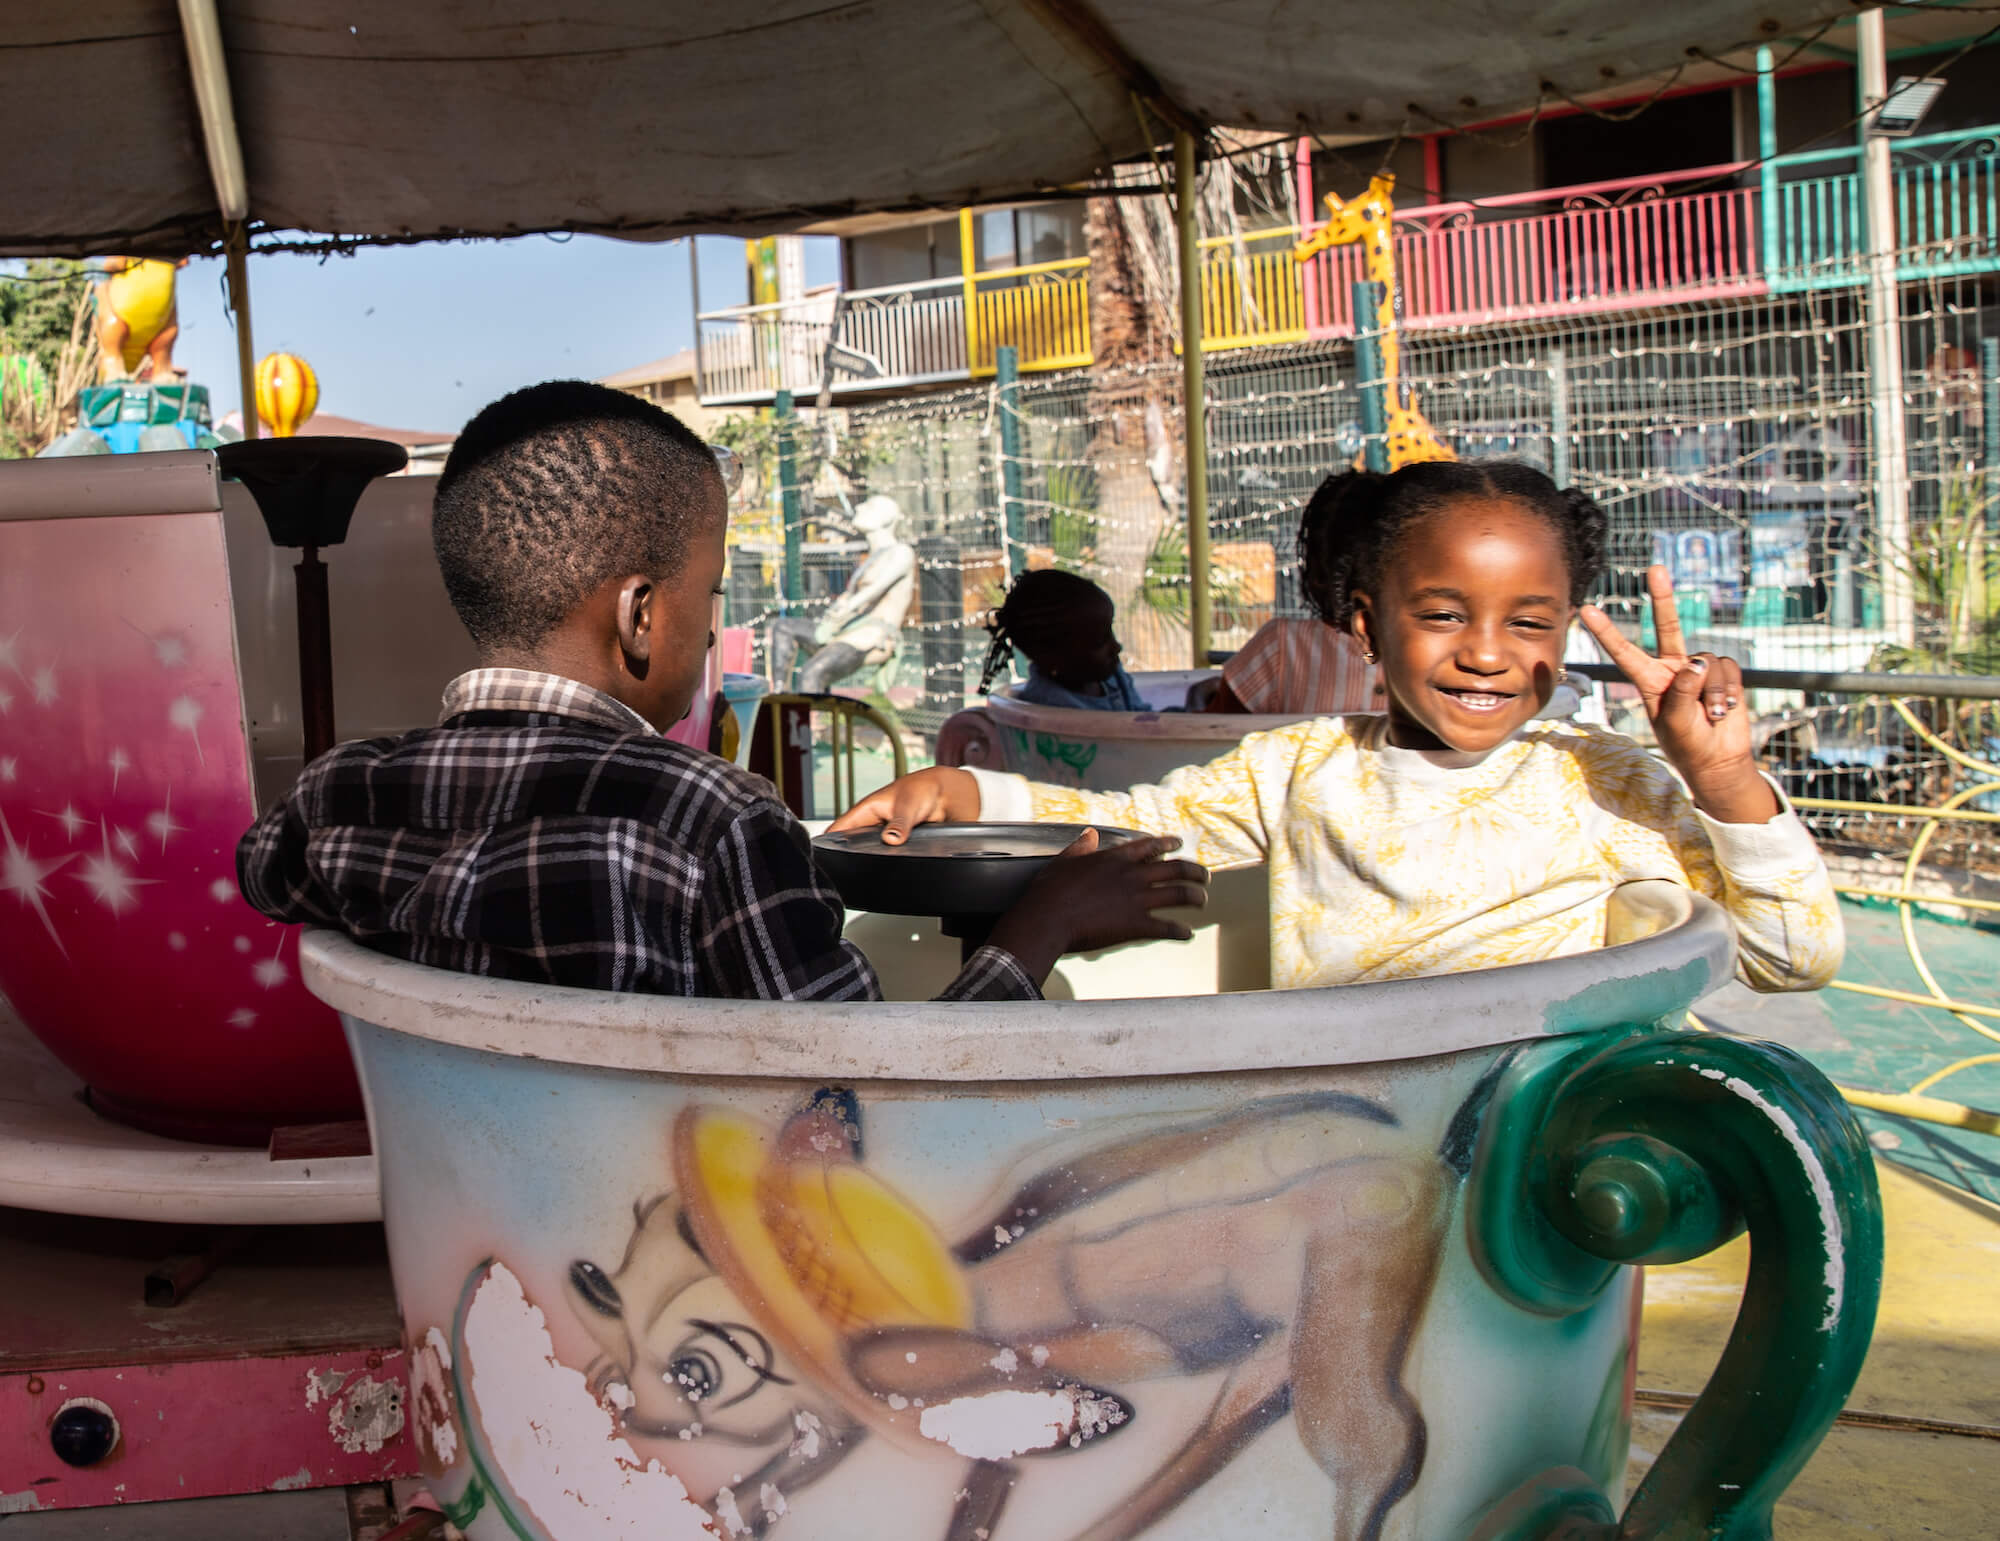 Ein Mädchen und ein Junge in einem Karussell auf dem Jahrmarkt